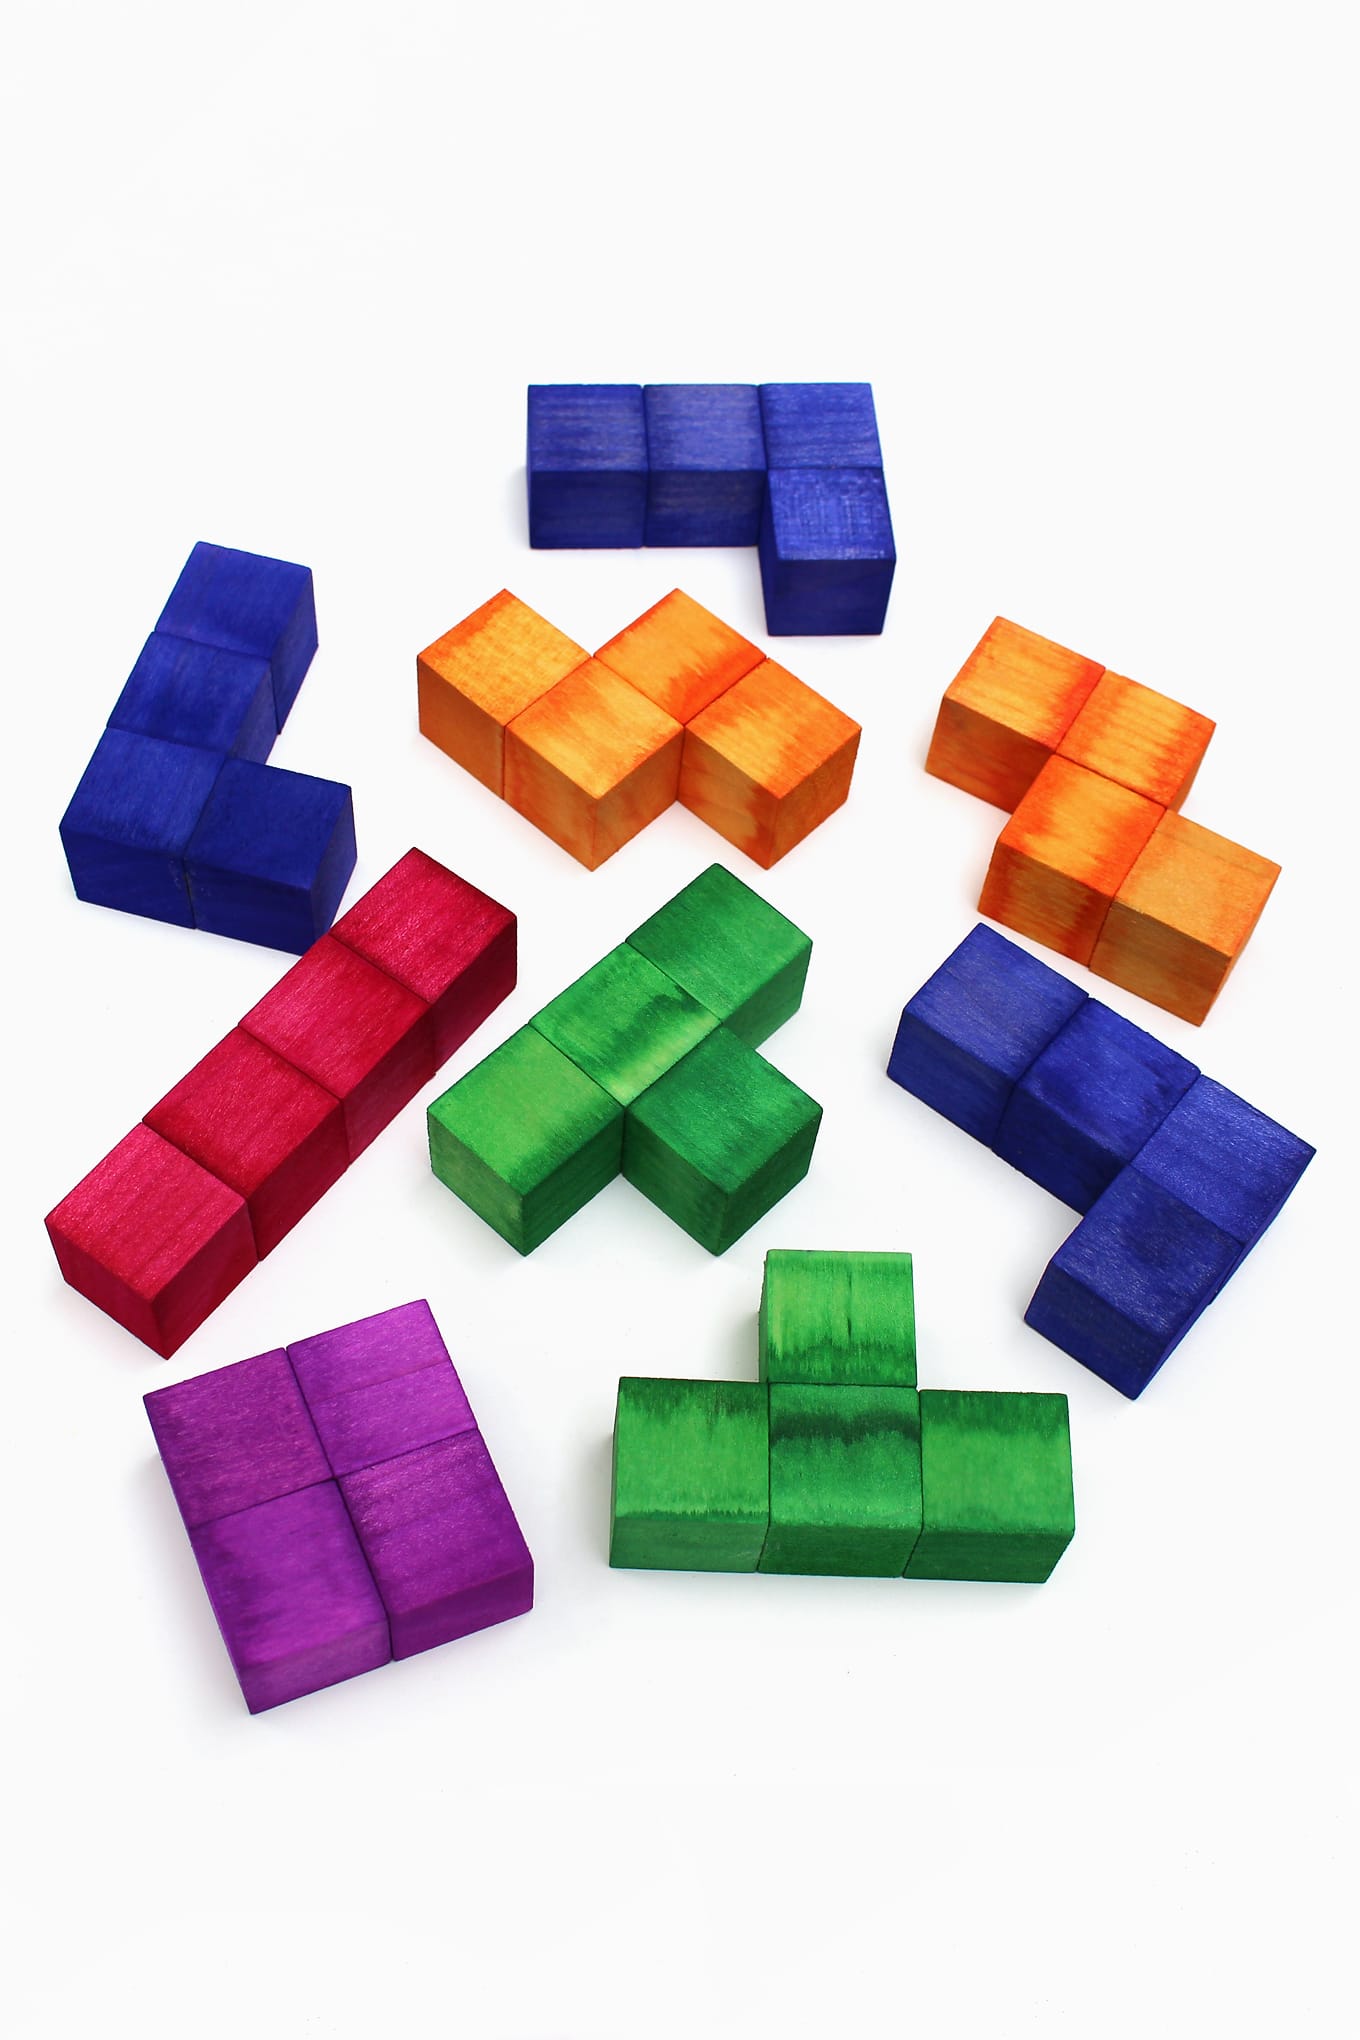 wood block tetris